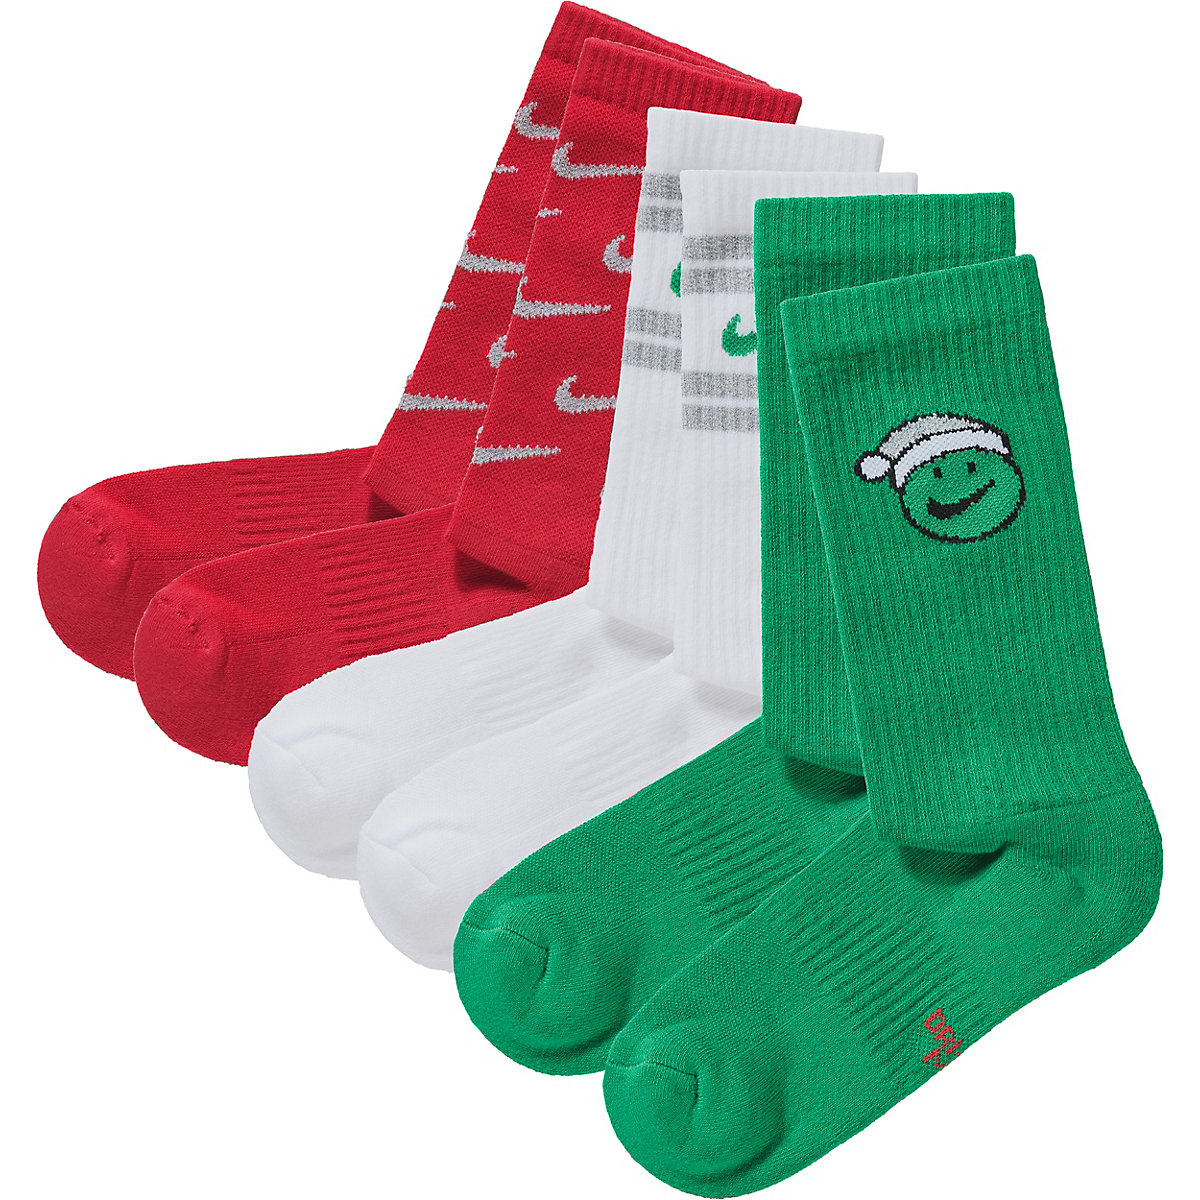 NIKE Socken EVRDY CUSH GIFT 3er Pack mehrfarbig